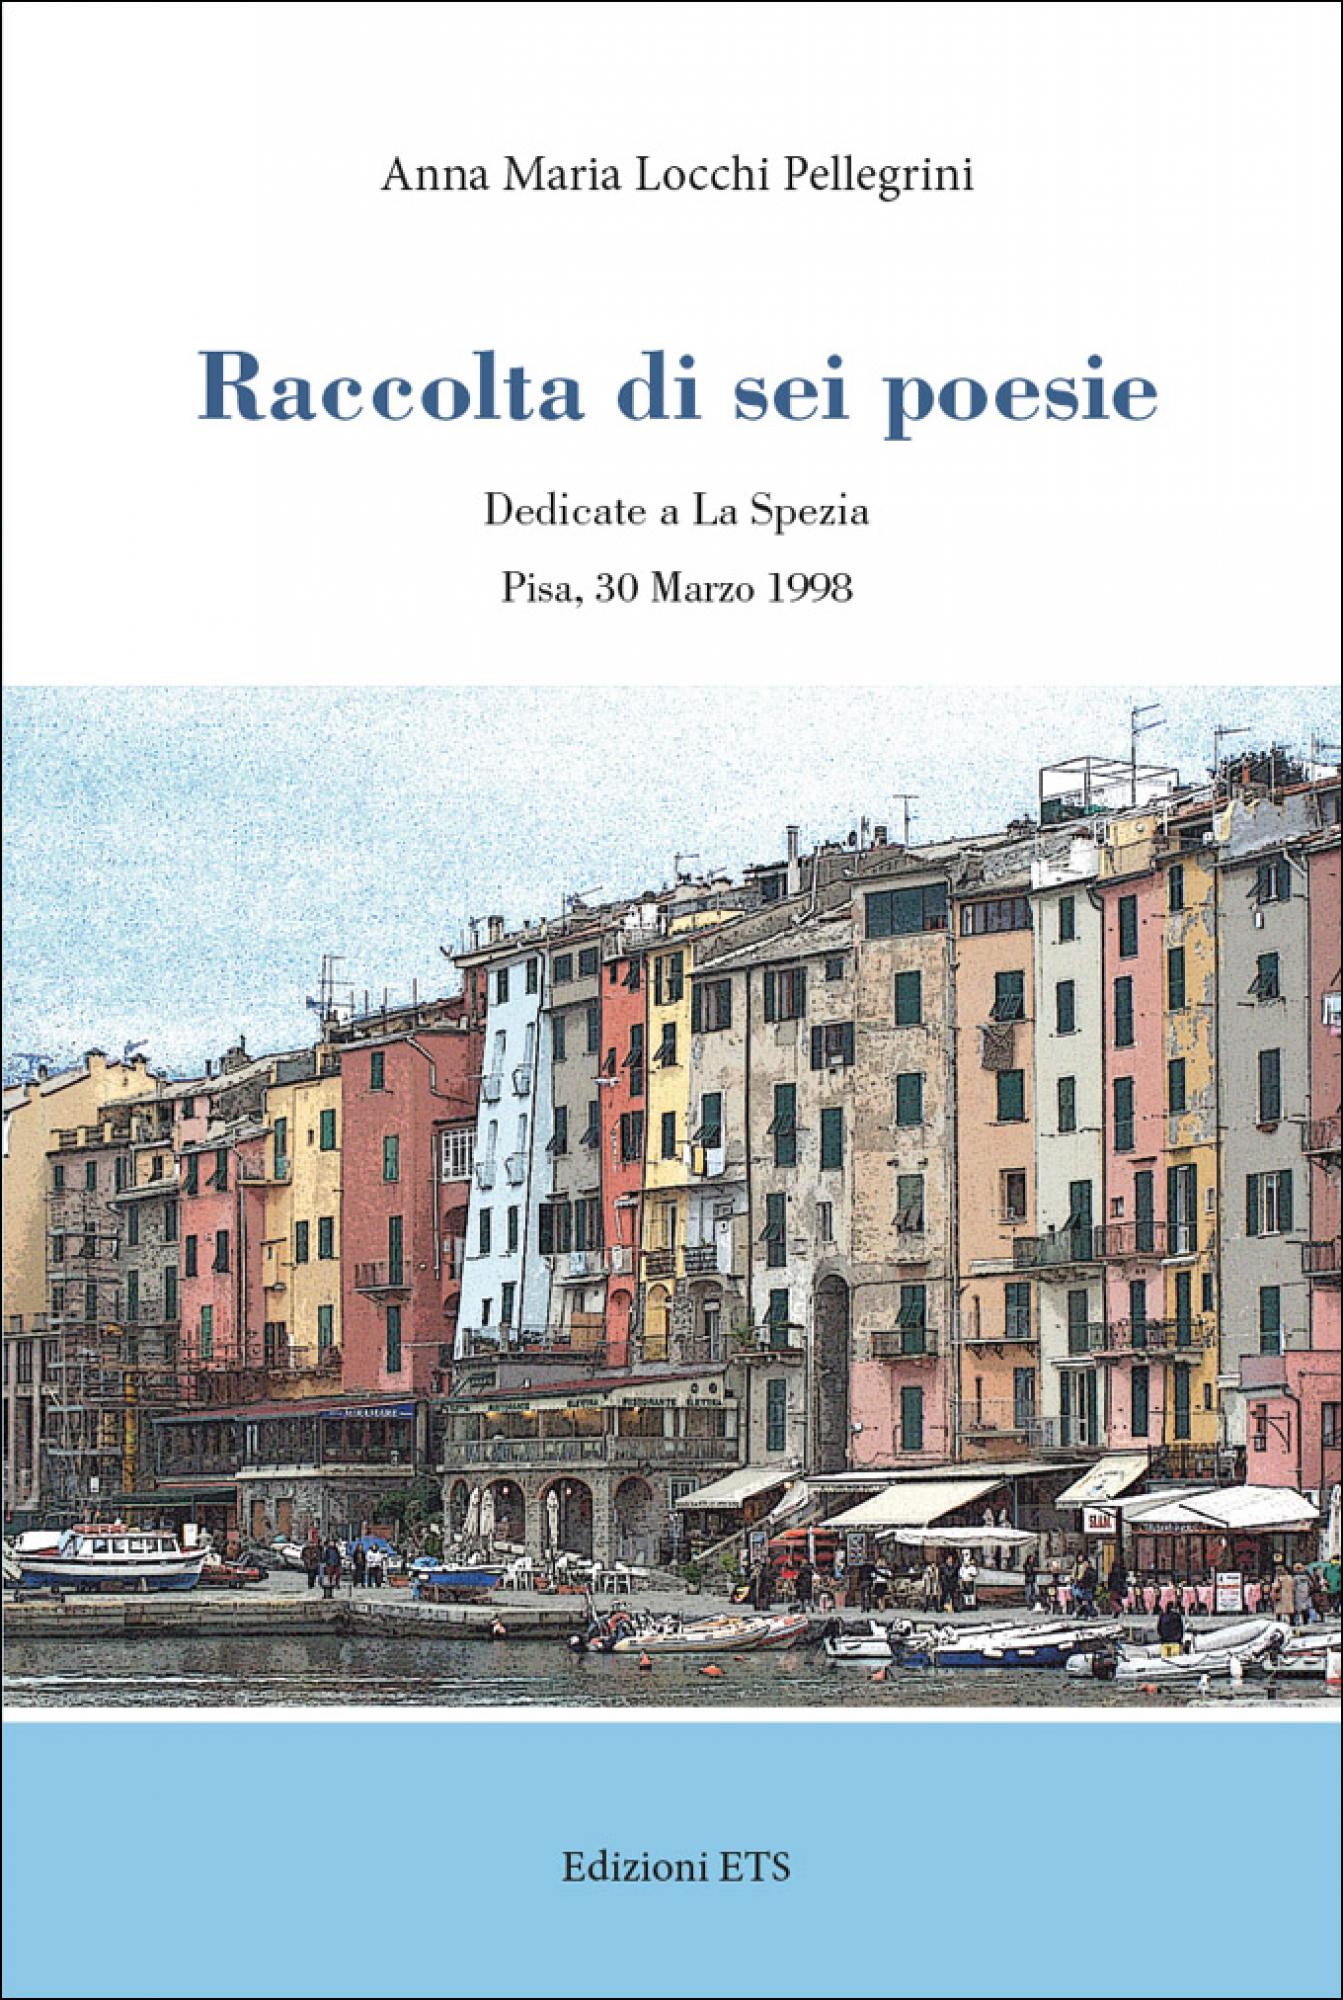 Raccolta di sei poesie.Dedicate a La Spezia – Pisa, 30 Marzo 1998